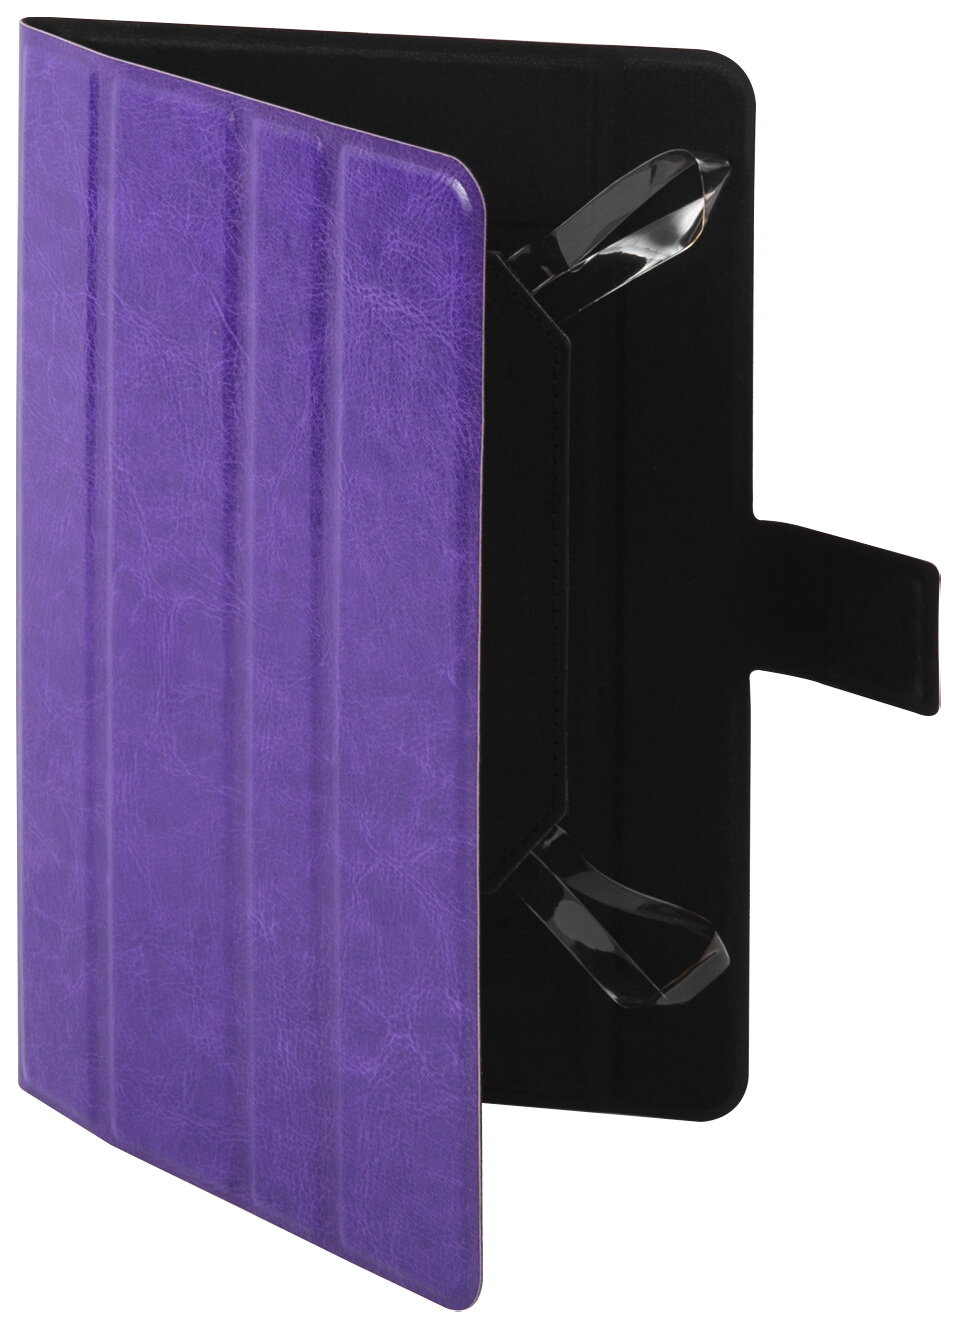 Чехол универсальный Red line Slim для планшетов 7-8 дюймов, фиолетовый - фото №11